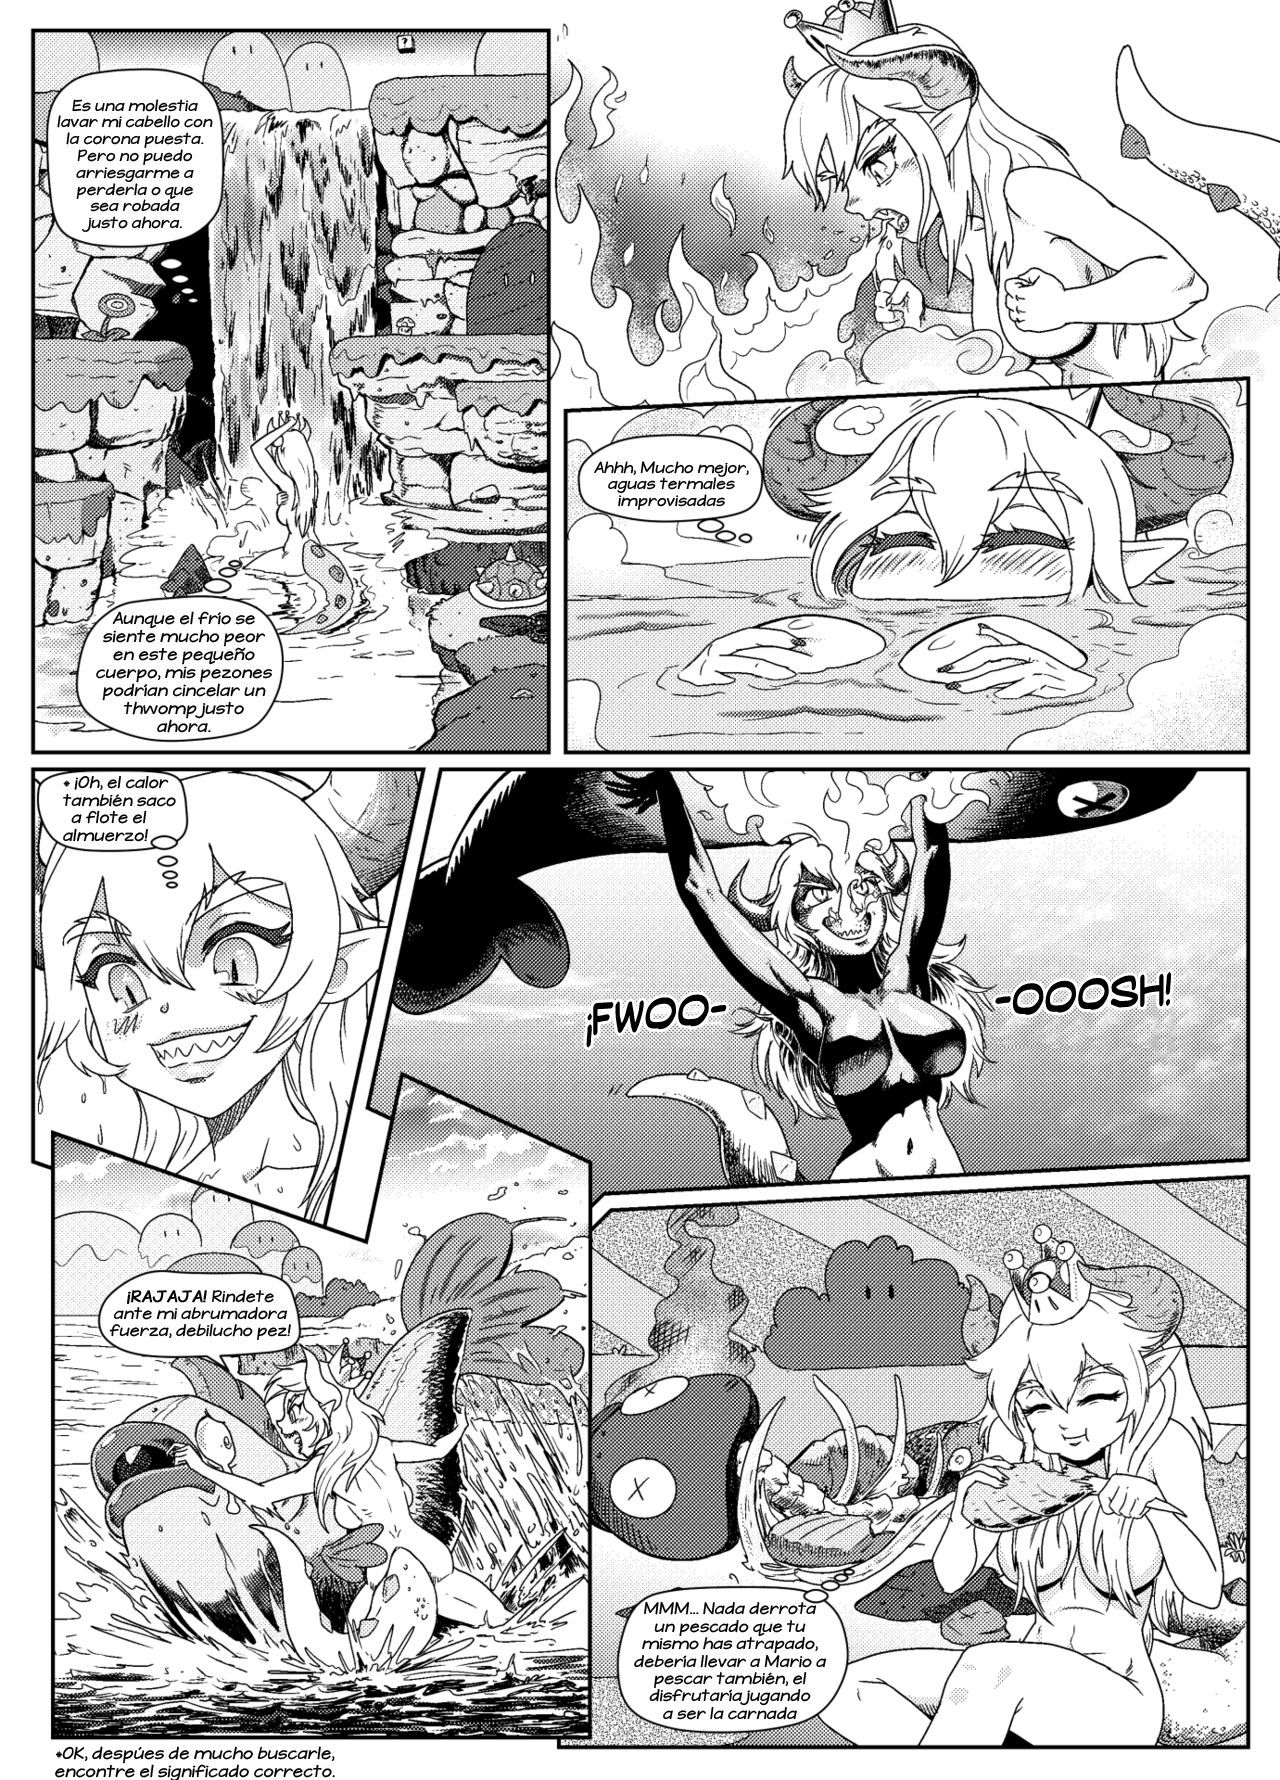 [Pencils] Bowsette Saga Vol.1 Y Vol.2 Completos - Vol.3 En Progreso (Mario Bros.) [Spanish] by Arkoniusx 10